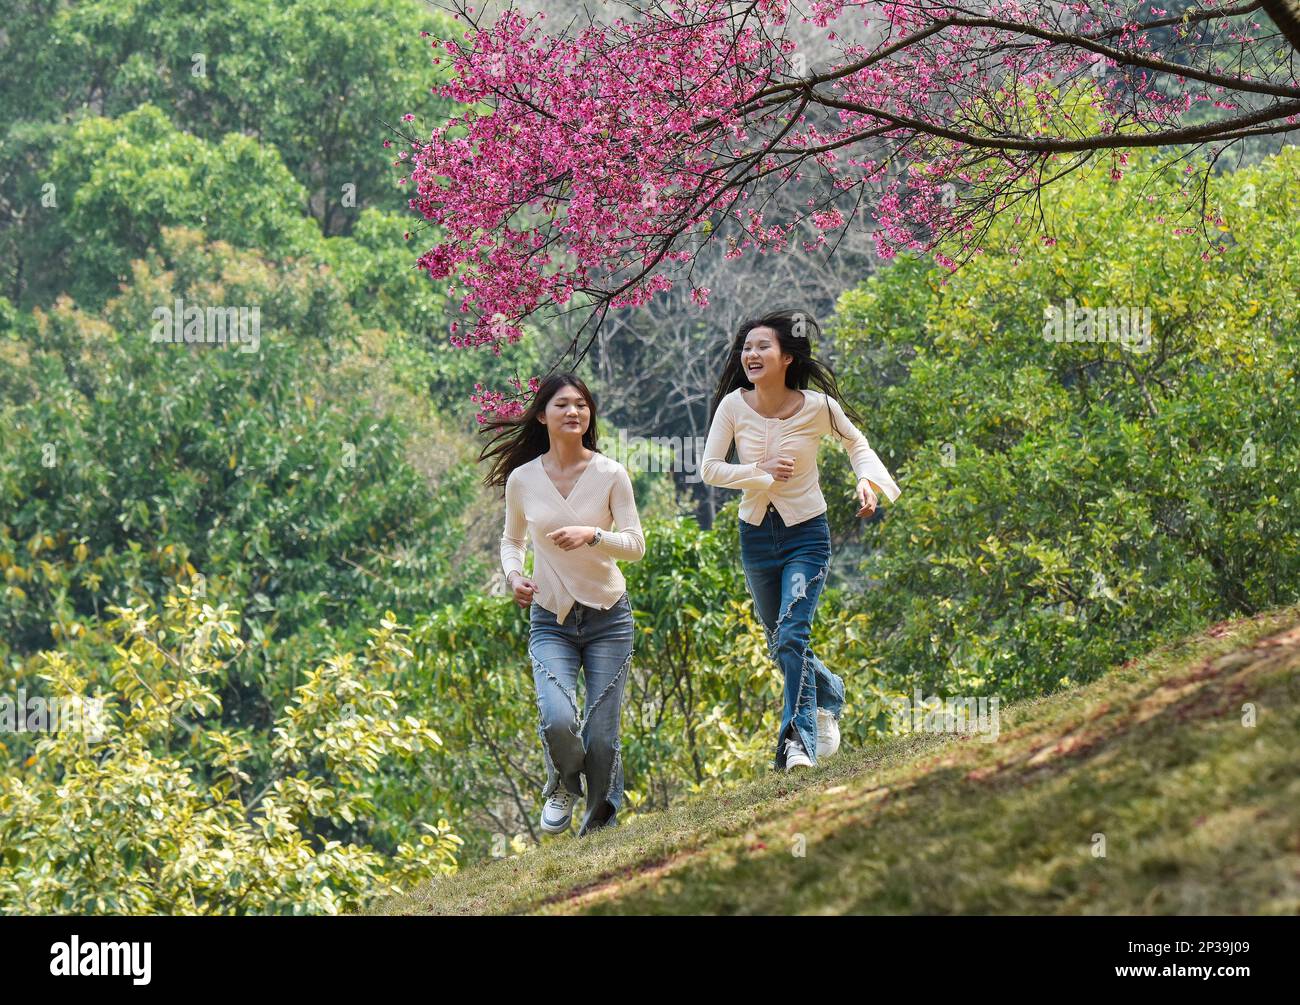 NANNING, CHINA - 4. MÄRZ 2023 - Touristen spielen im Shimen Park in Nanning, Südchina Autonomer Region Guangxi Zhuang, im März unter Kirschblüten Stockfoto